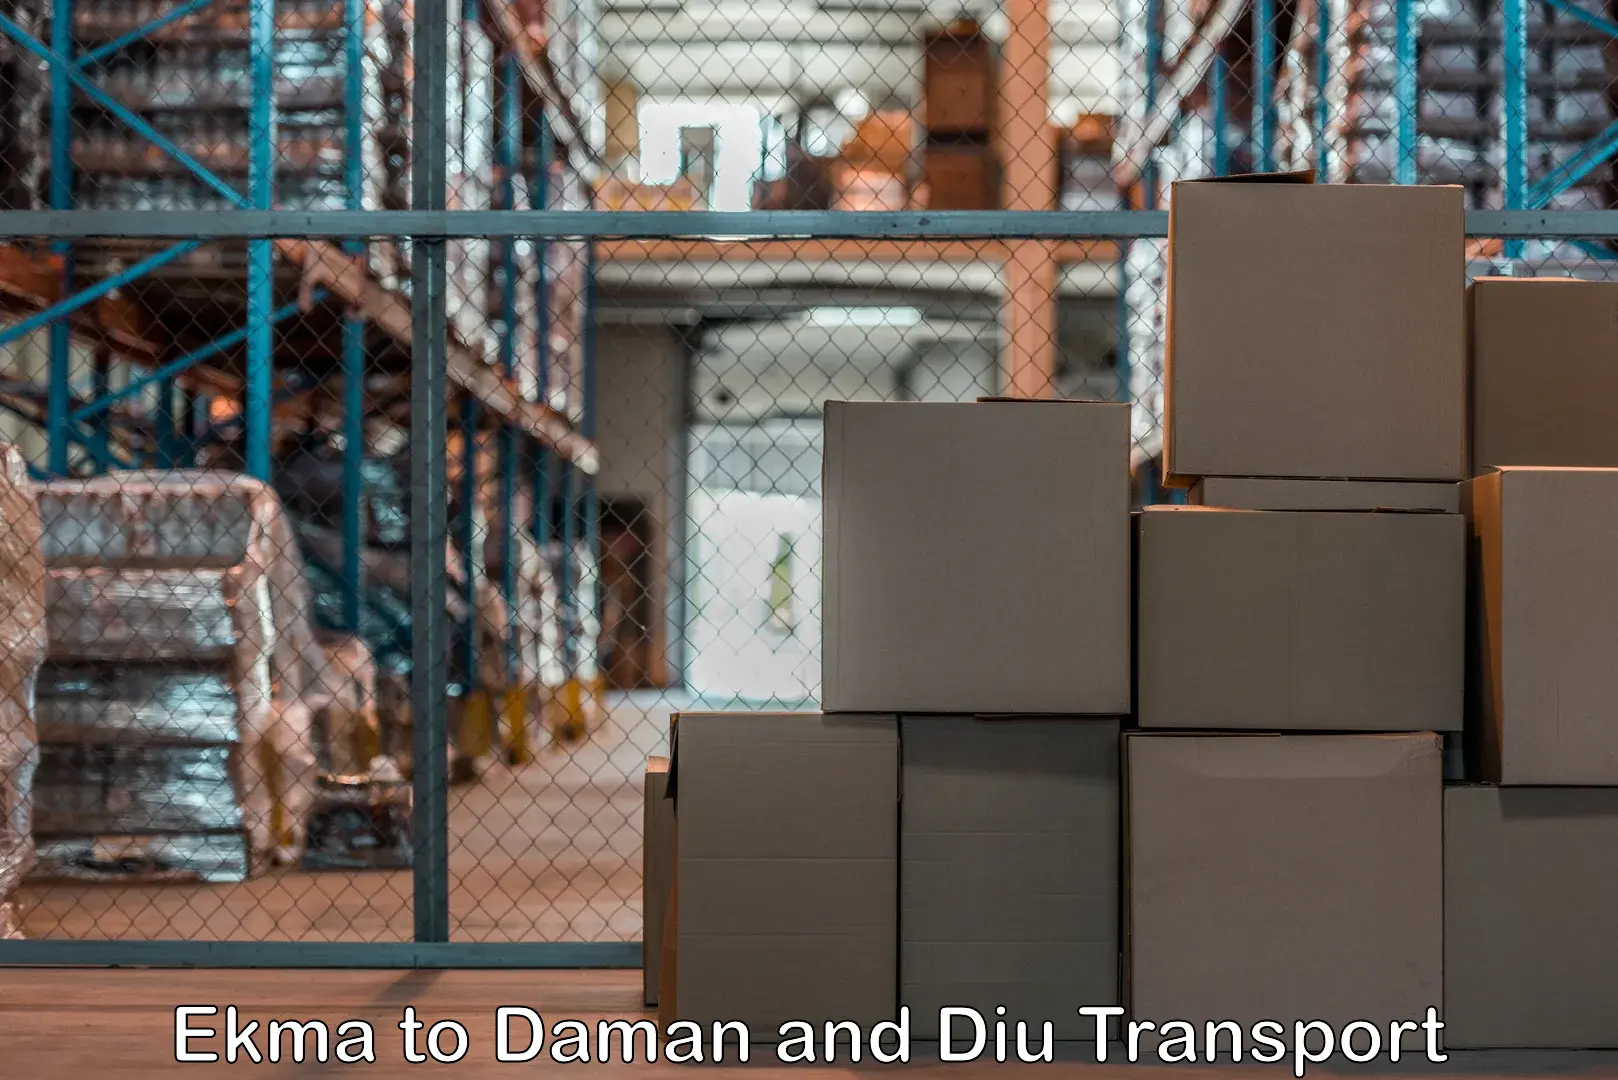 Pick up transport service Ekma to Daman and Diu